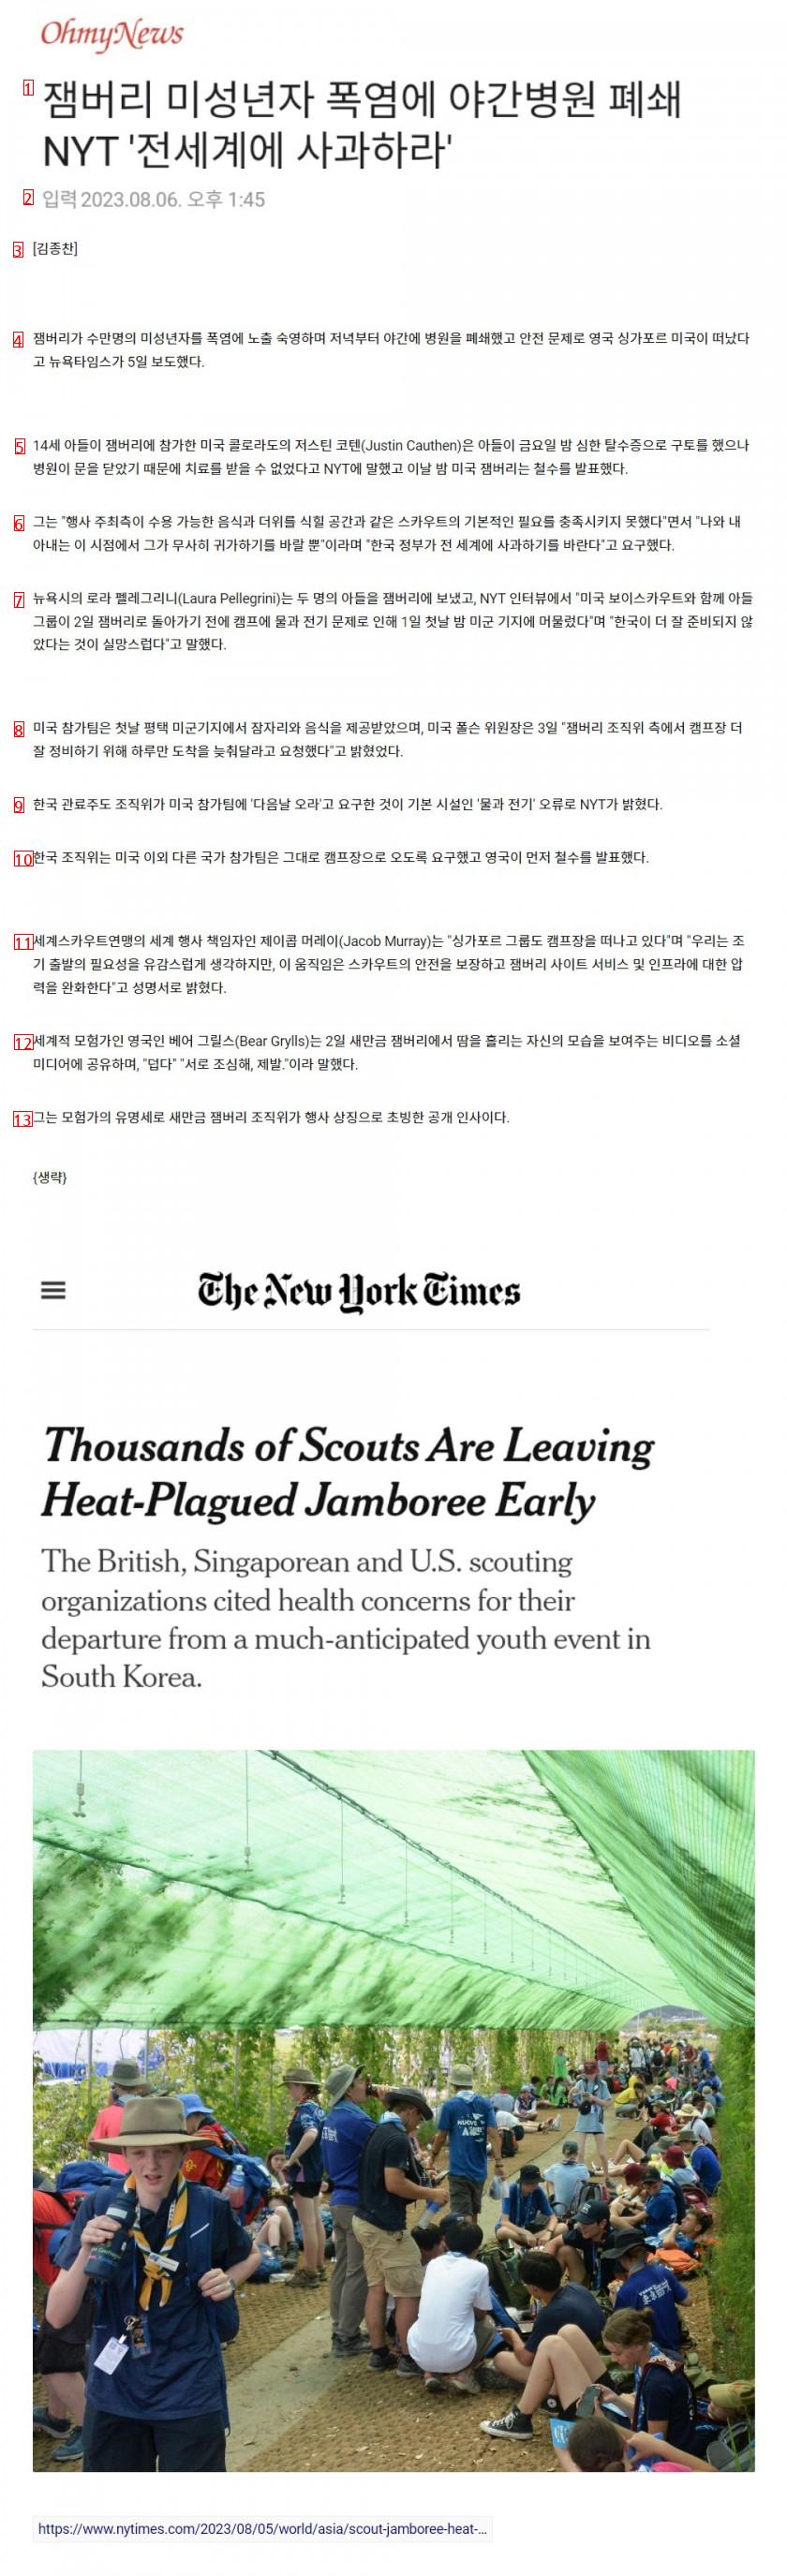 ジャンボリー未成年者の猛暑で夜間病院を閉鎖 NYT全世界に謝罪せよ